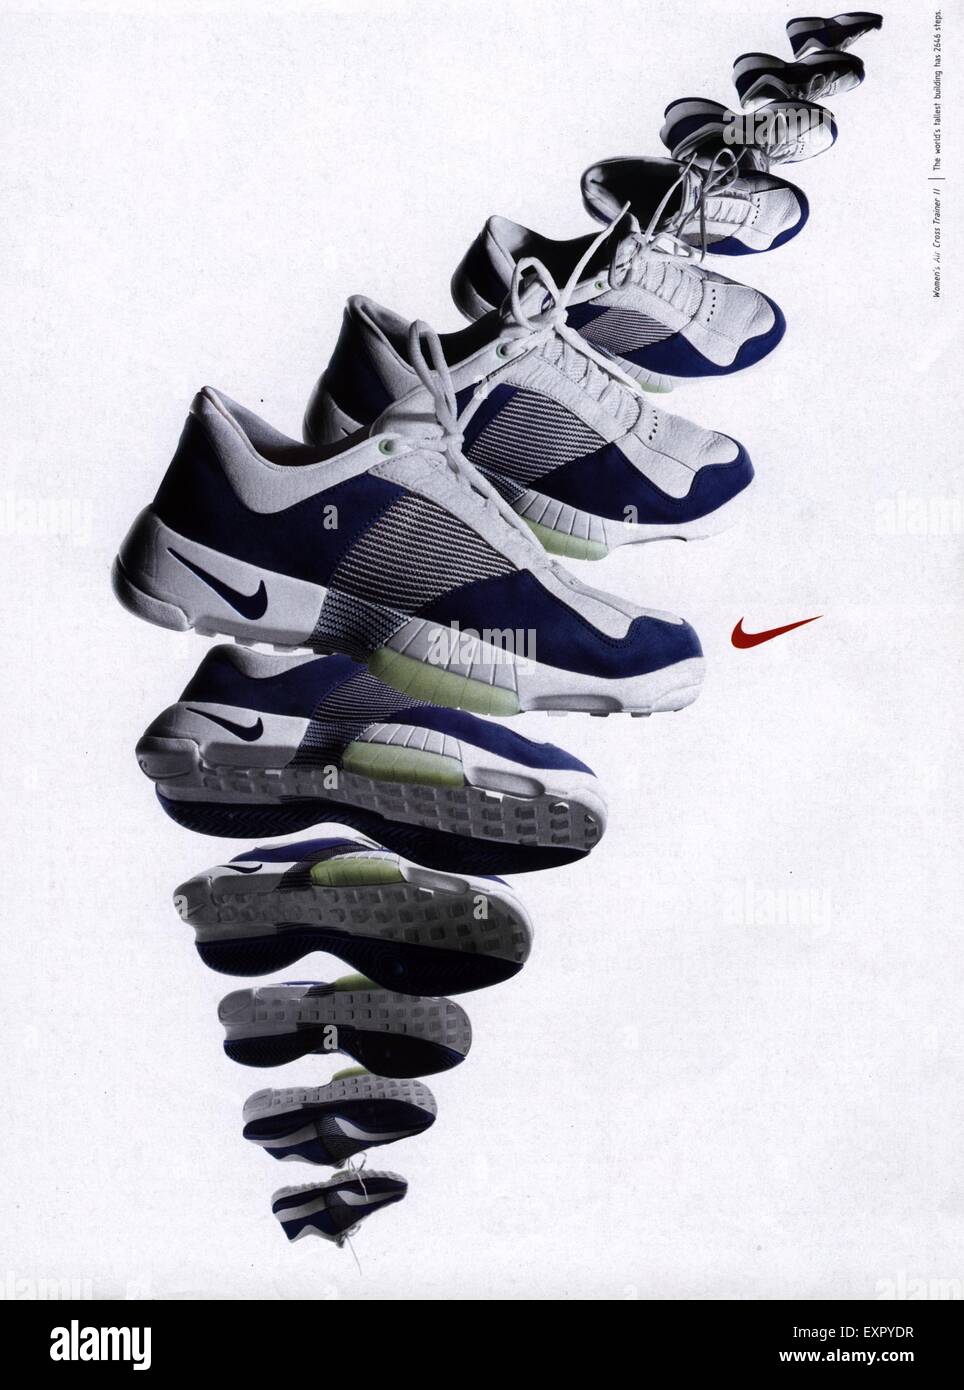 2000er Jahre UK Nike Magazin Anzeige Stockfotografie - Alamy